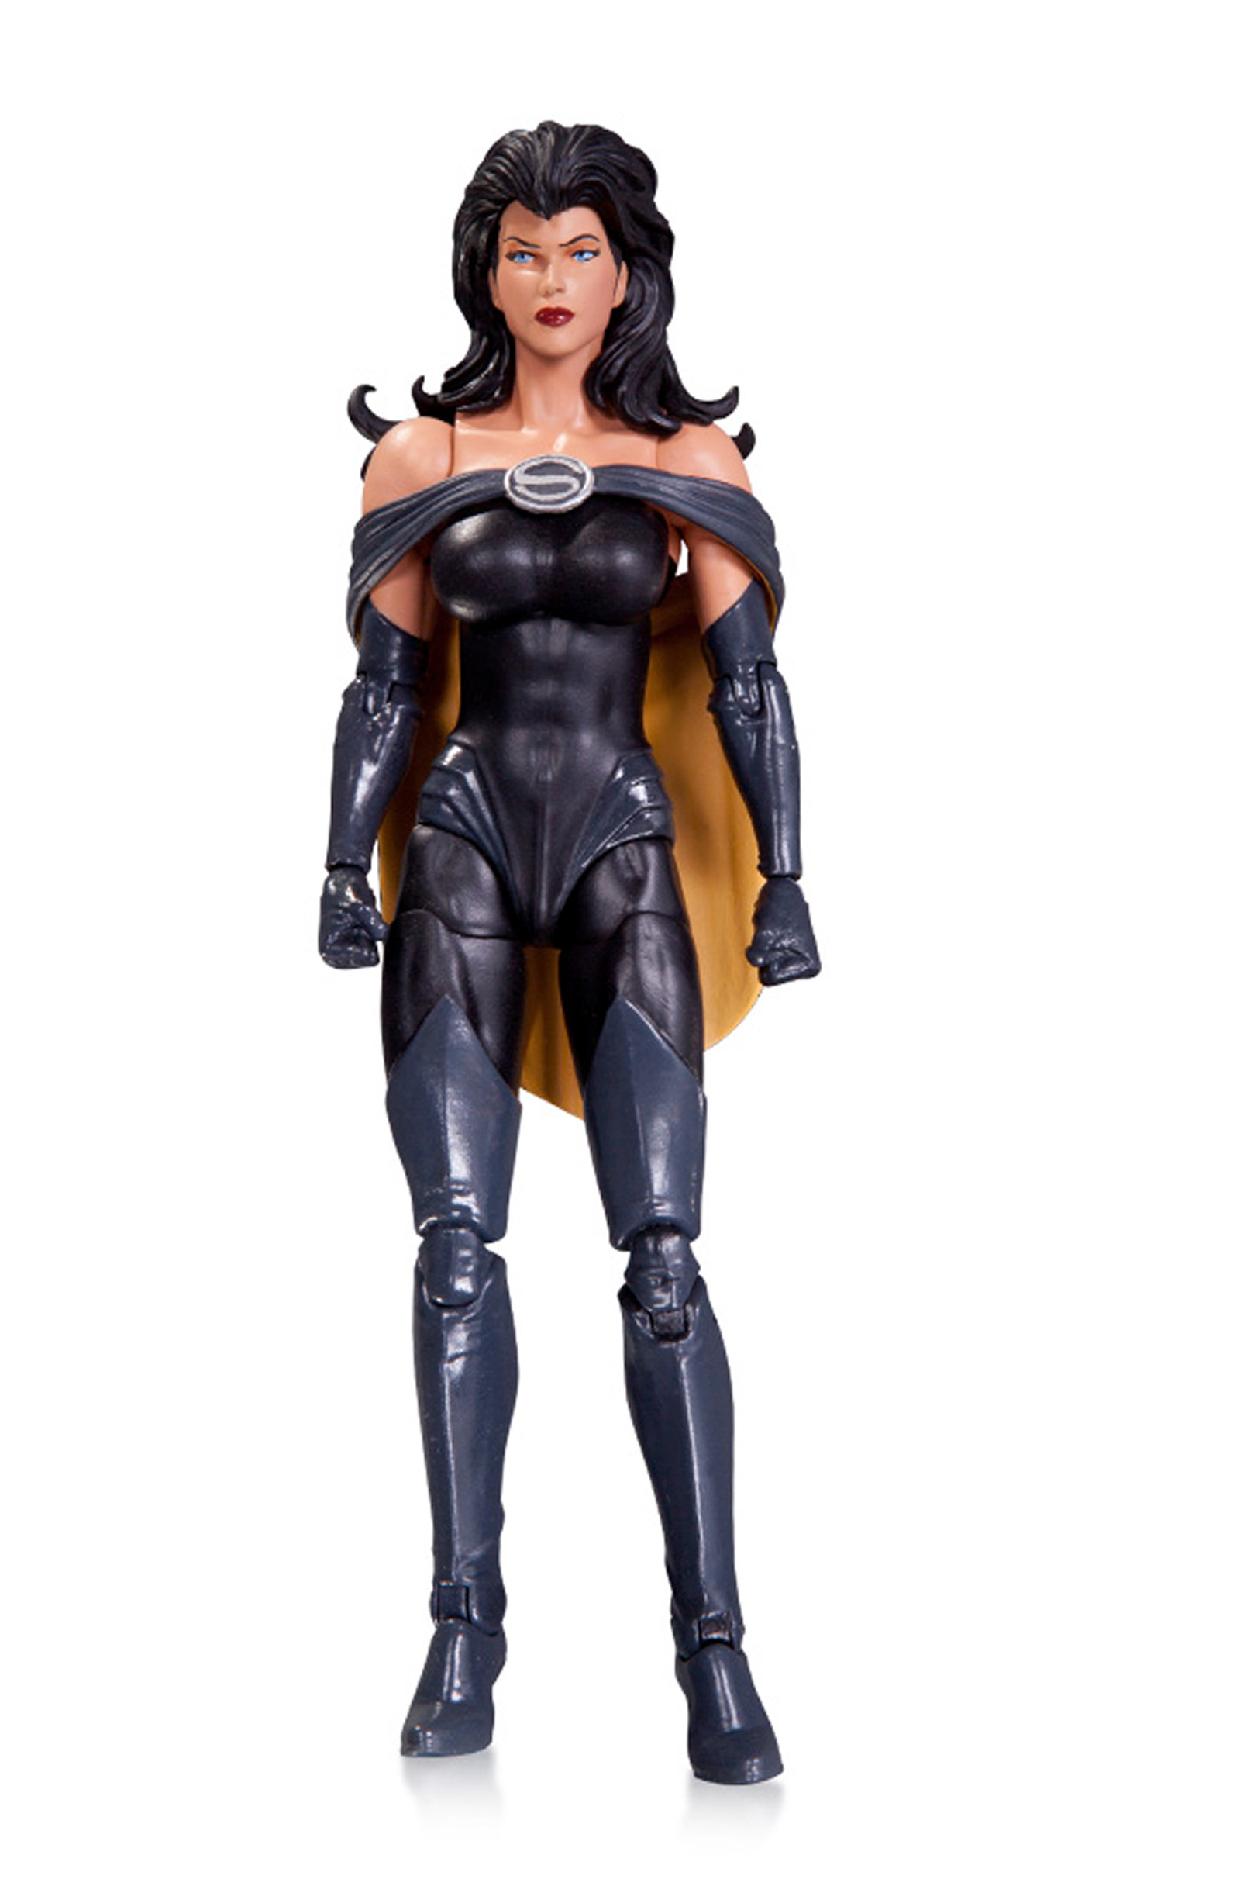 Super Villains Superwoman Action Figure